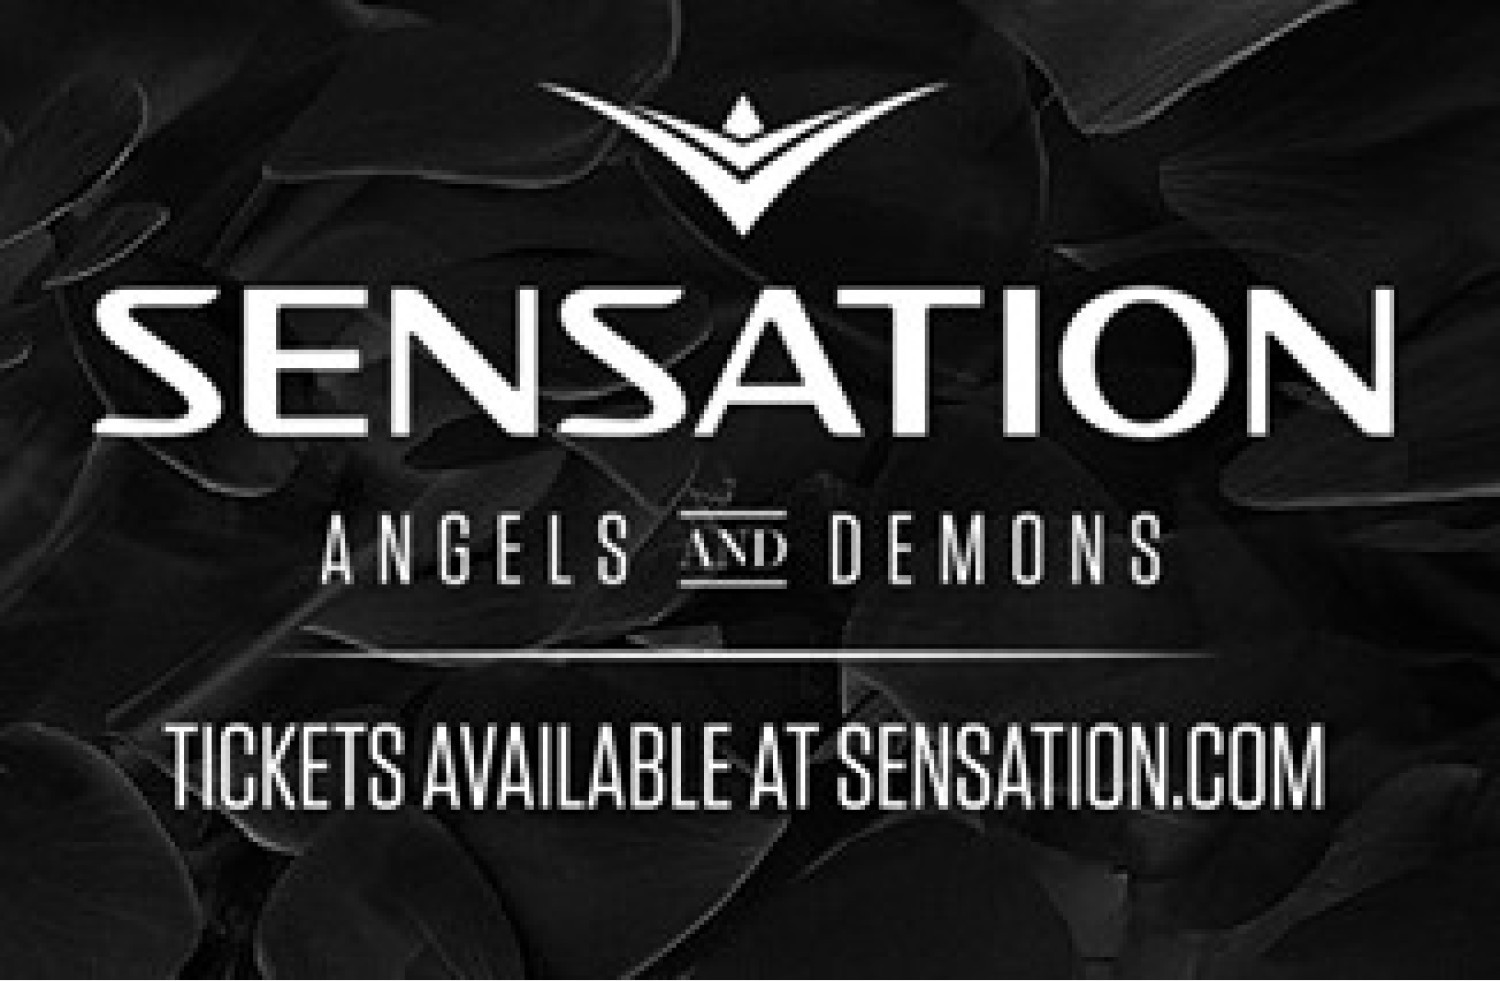 Interview: ‘Angels and demons wordt een duaal avondje’